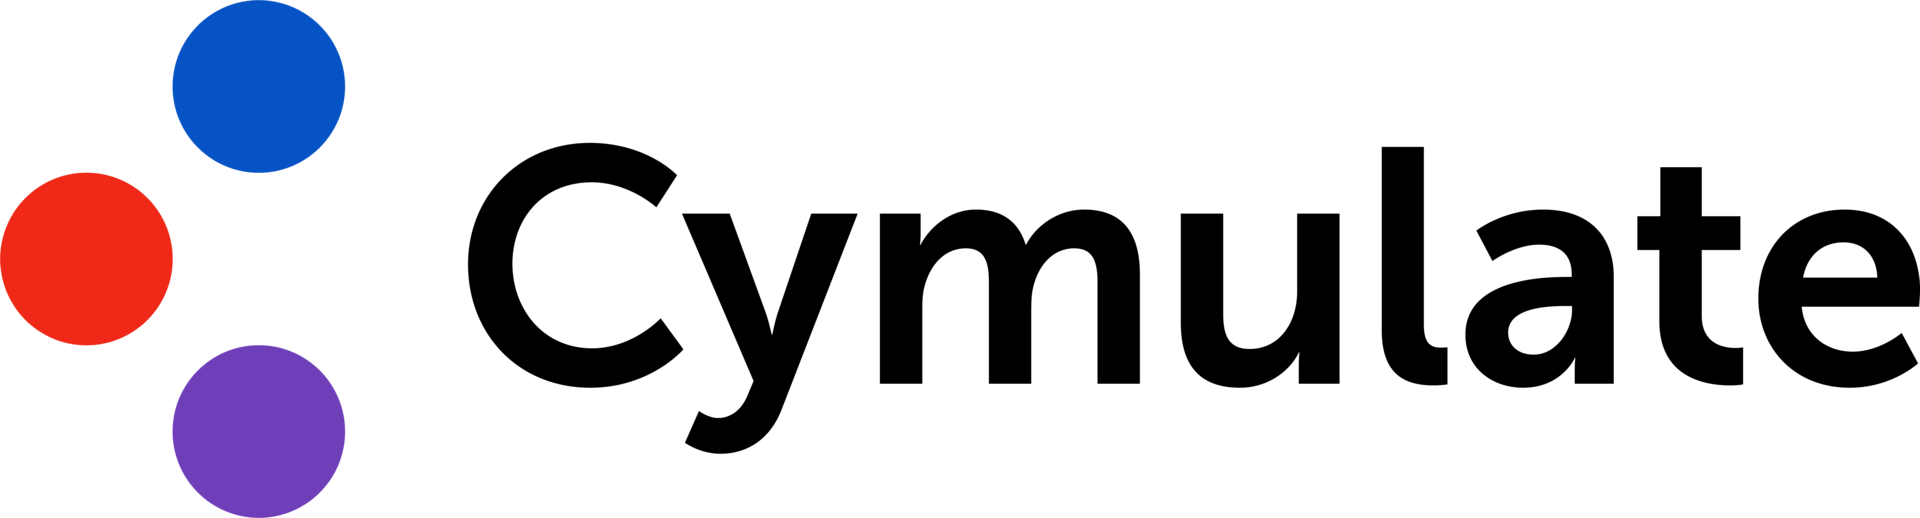 Cymulate logo